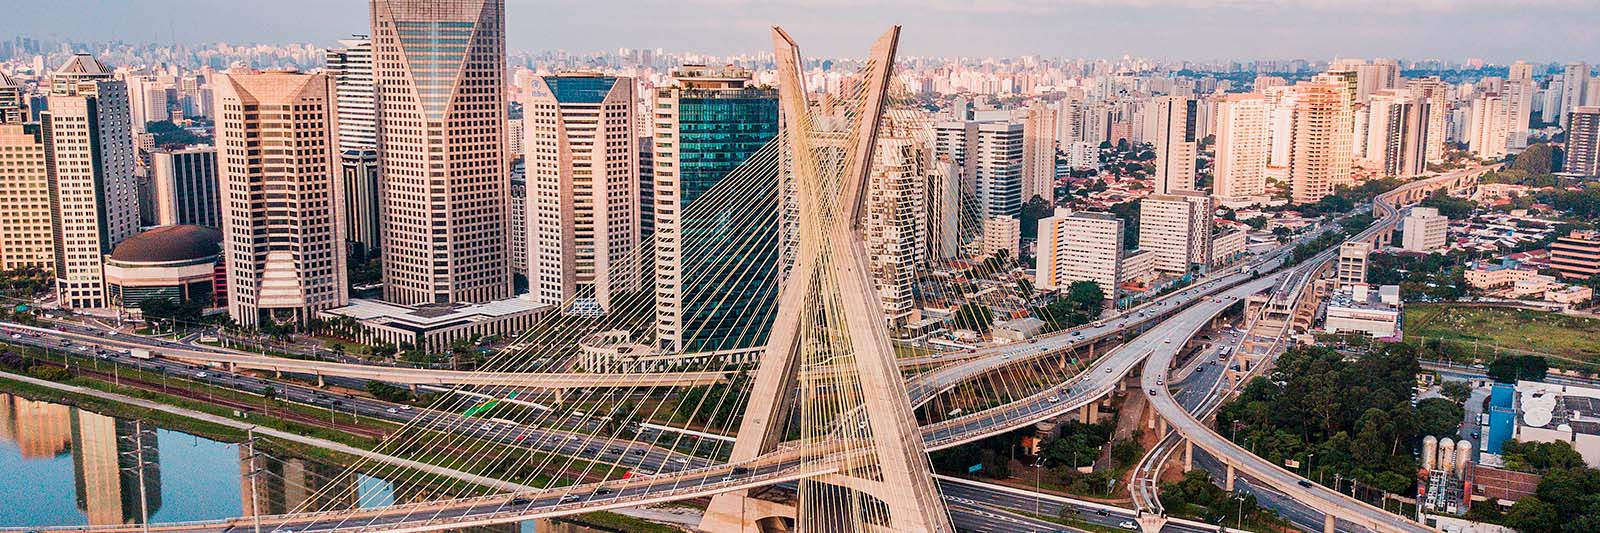 Aproveite os descontos de dezenas de convênios na região metropolitana de São Paulo